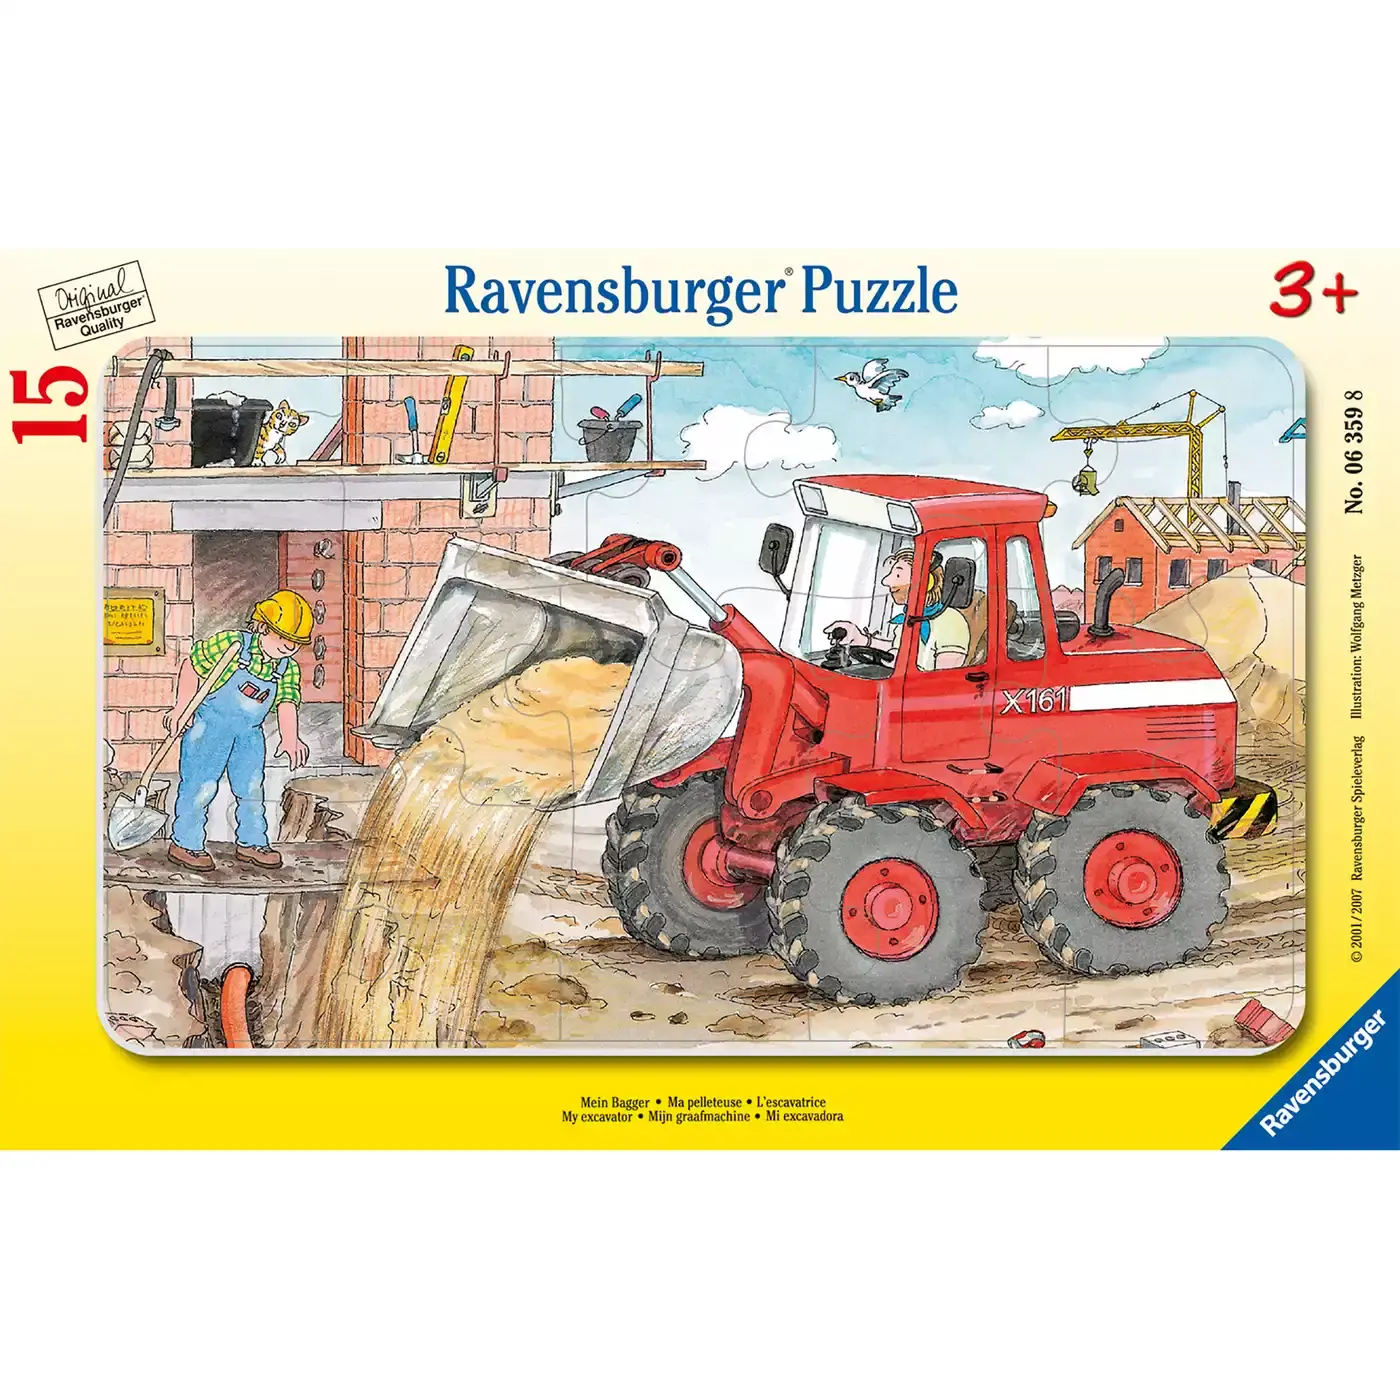 Kinderpuzzle Mein Bagger Ravensburger 2000511219500 3